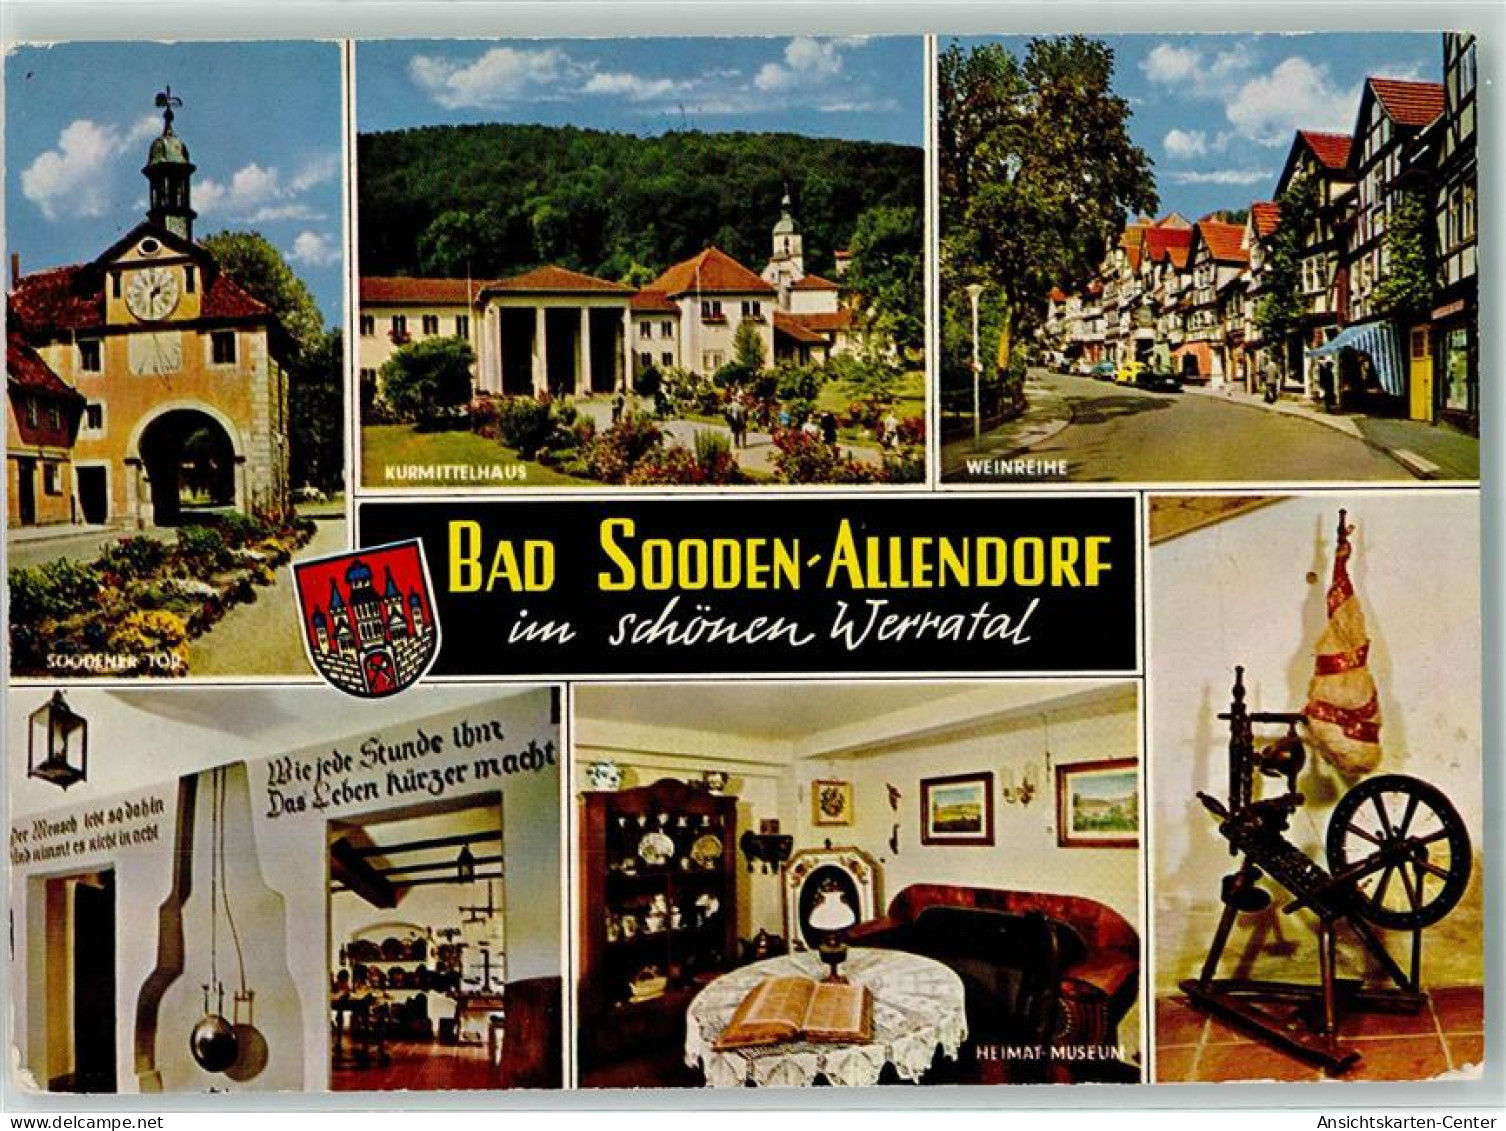 39387807 - Bad Sooden-Allendorf - Bad Sooden-Allendorf